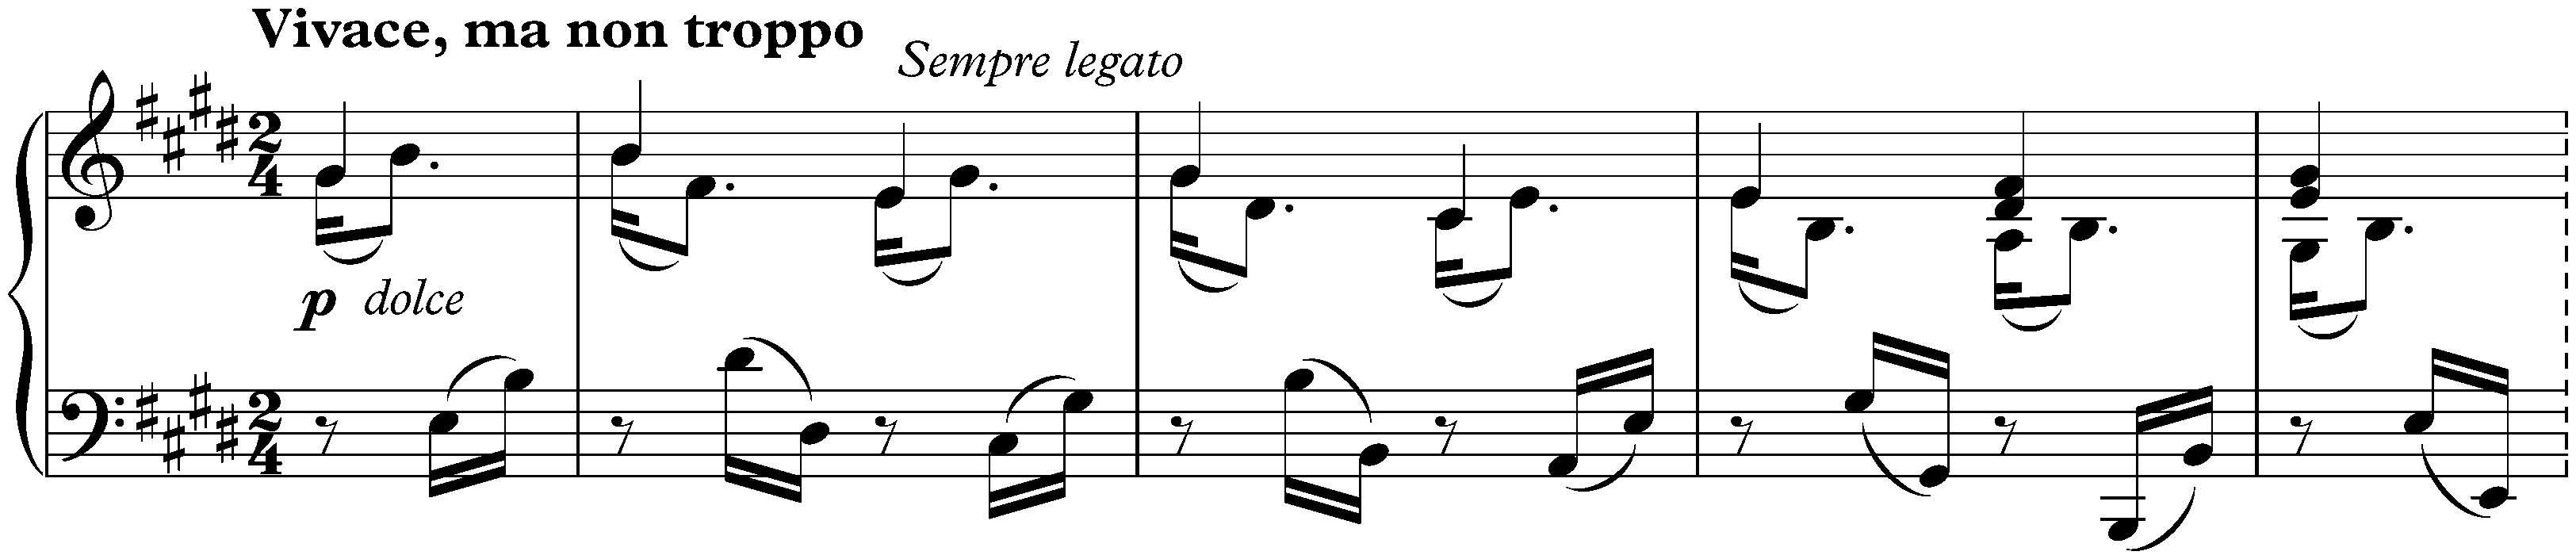 Sonata no. 30 in E major, op. 109; 1. Vivace, ma non troppo – Adagio espressivo